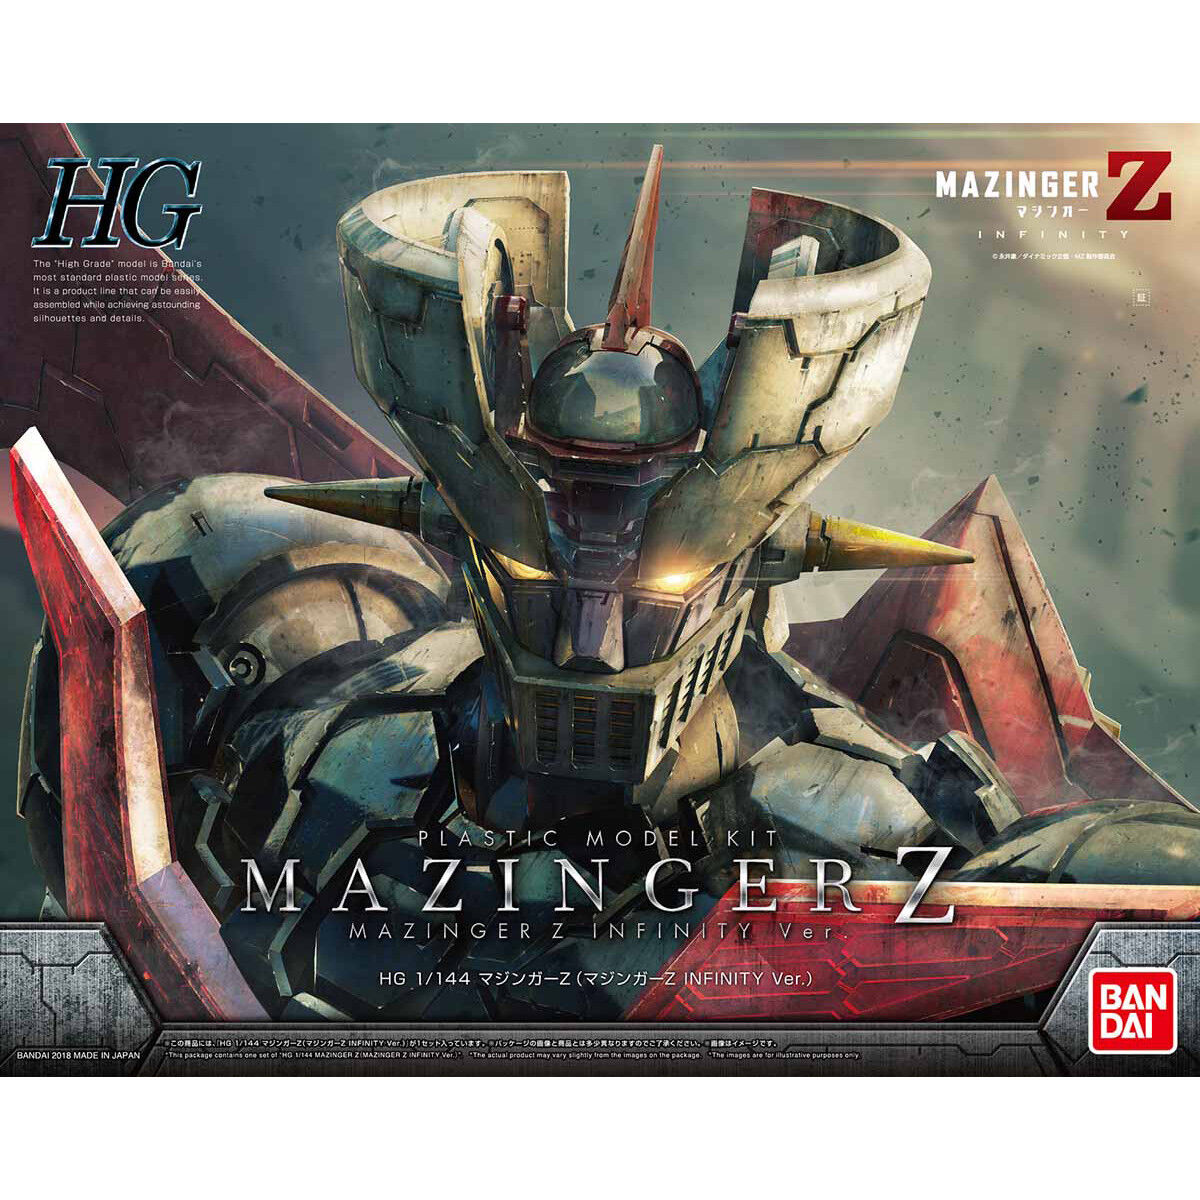 Maquette - Mazinger Z Infinity Ver. Model Kit 1/144 [HG]